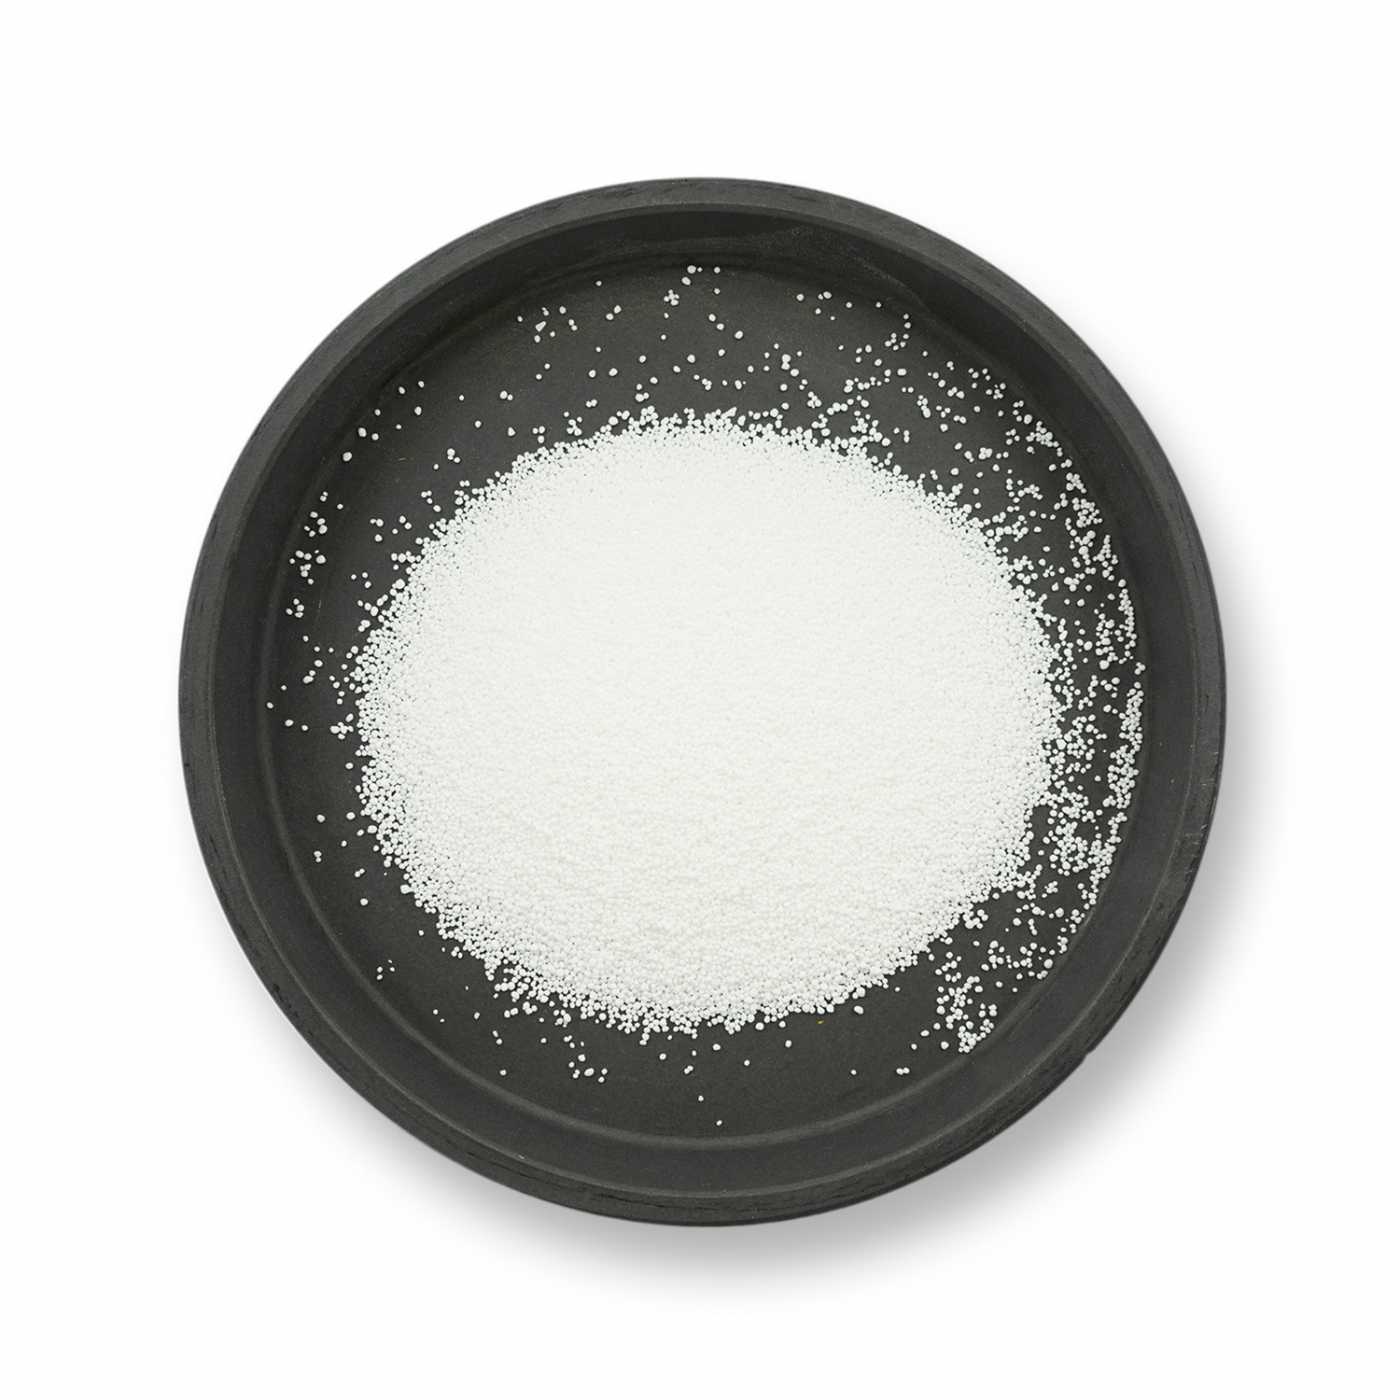 Percarbonate de soude - 5 Kg - Neutre